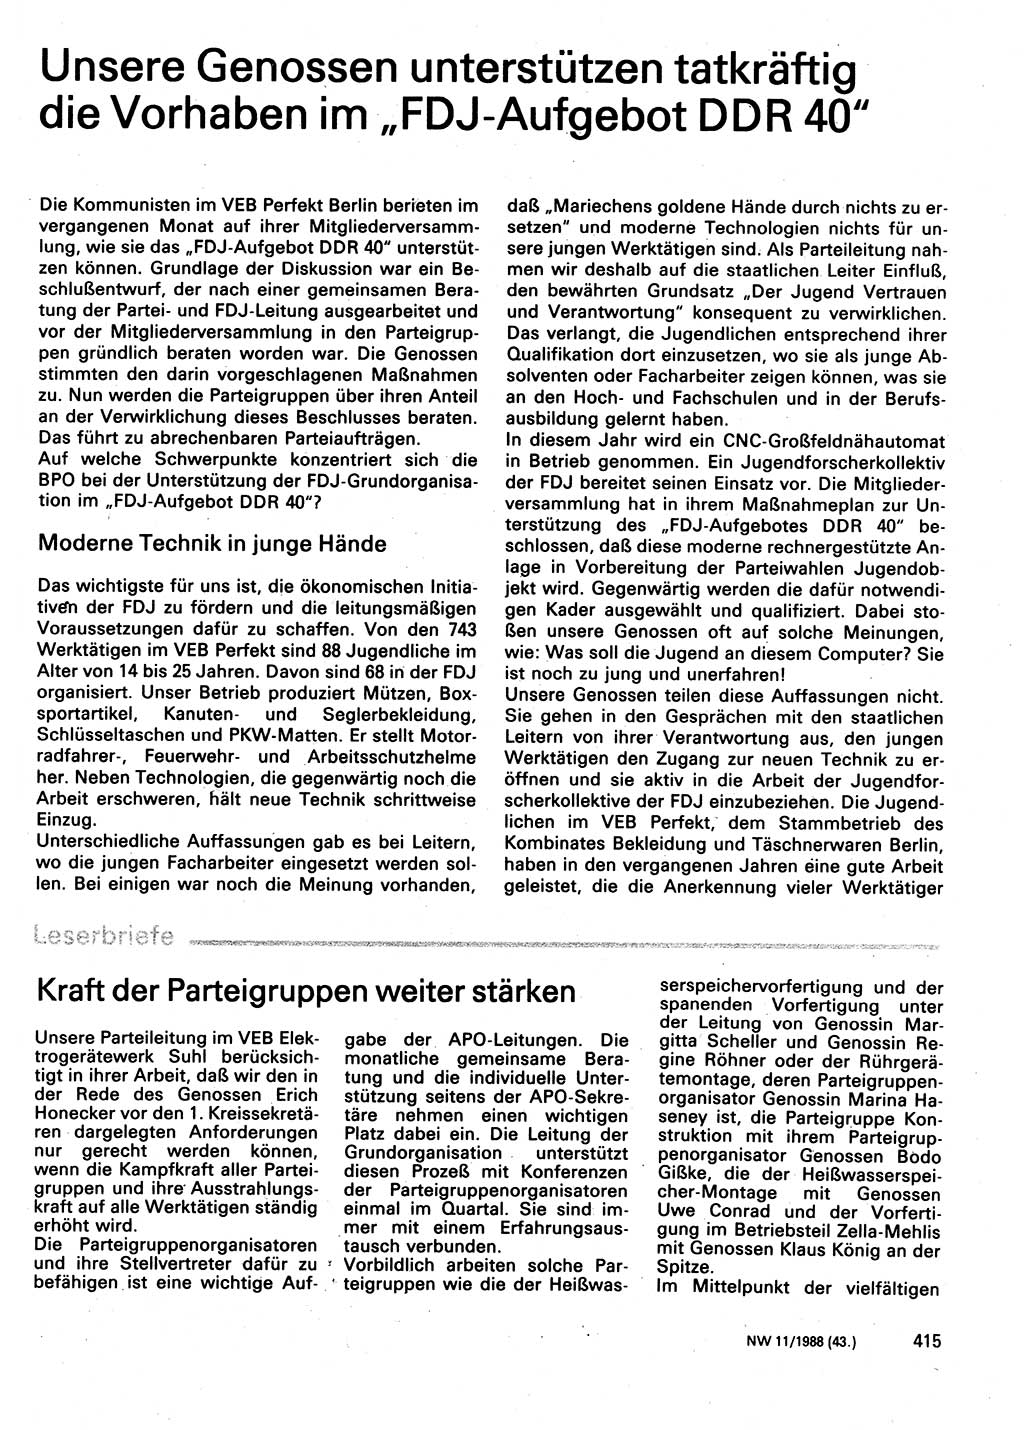 Neuer Weg (NW), Organ des Zentralkomitees (ZK) der SED (Sozialistische Einheitspartei Deutschlands) für Fragen des Parteilebens, 43. Jahrgang [Deutsche Demokratische Republik (DDR)] 1988, Seite 415 (NW ZK SED DDR 1988, S. 415)